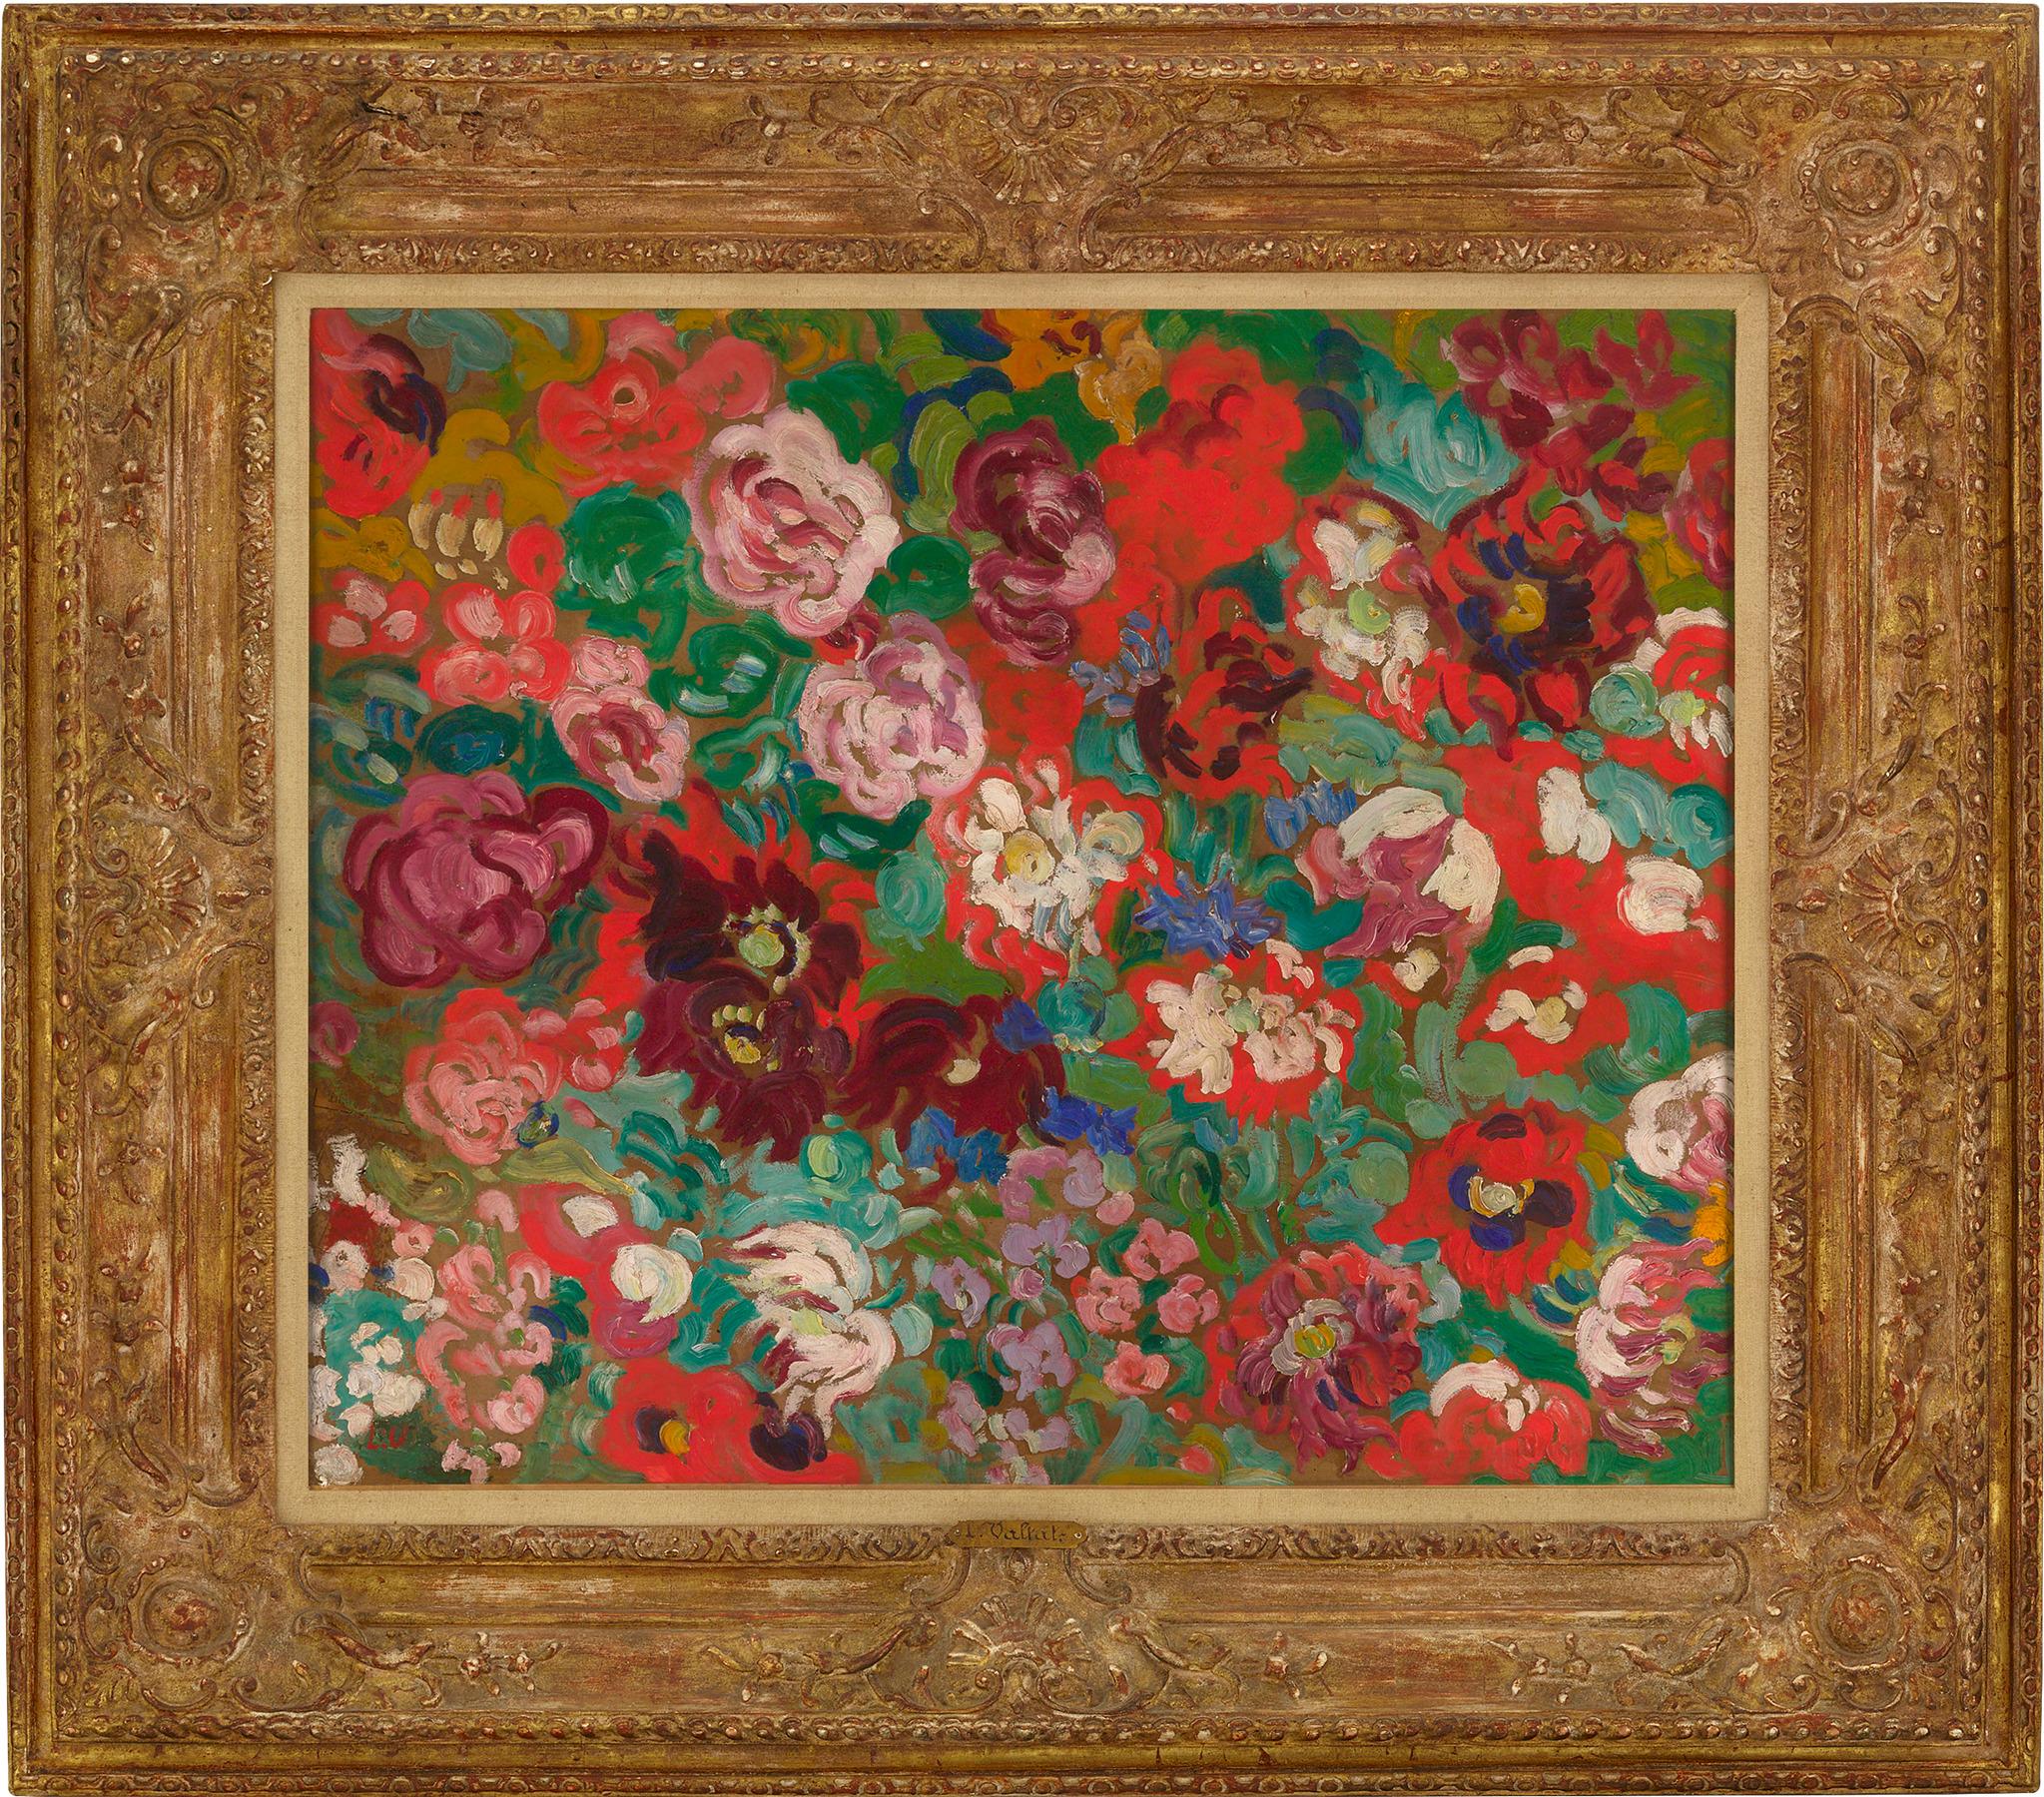 Panneau de fleurs - Painting by Louis Valtat